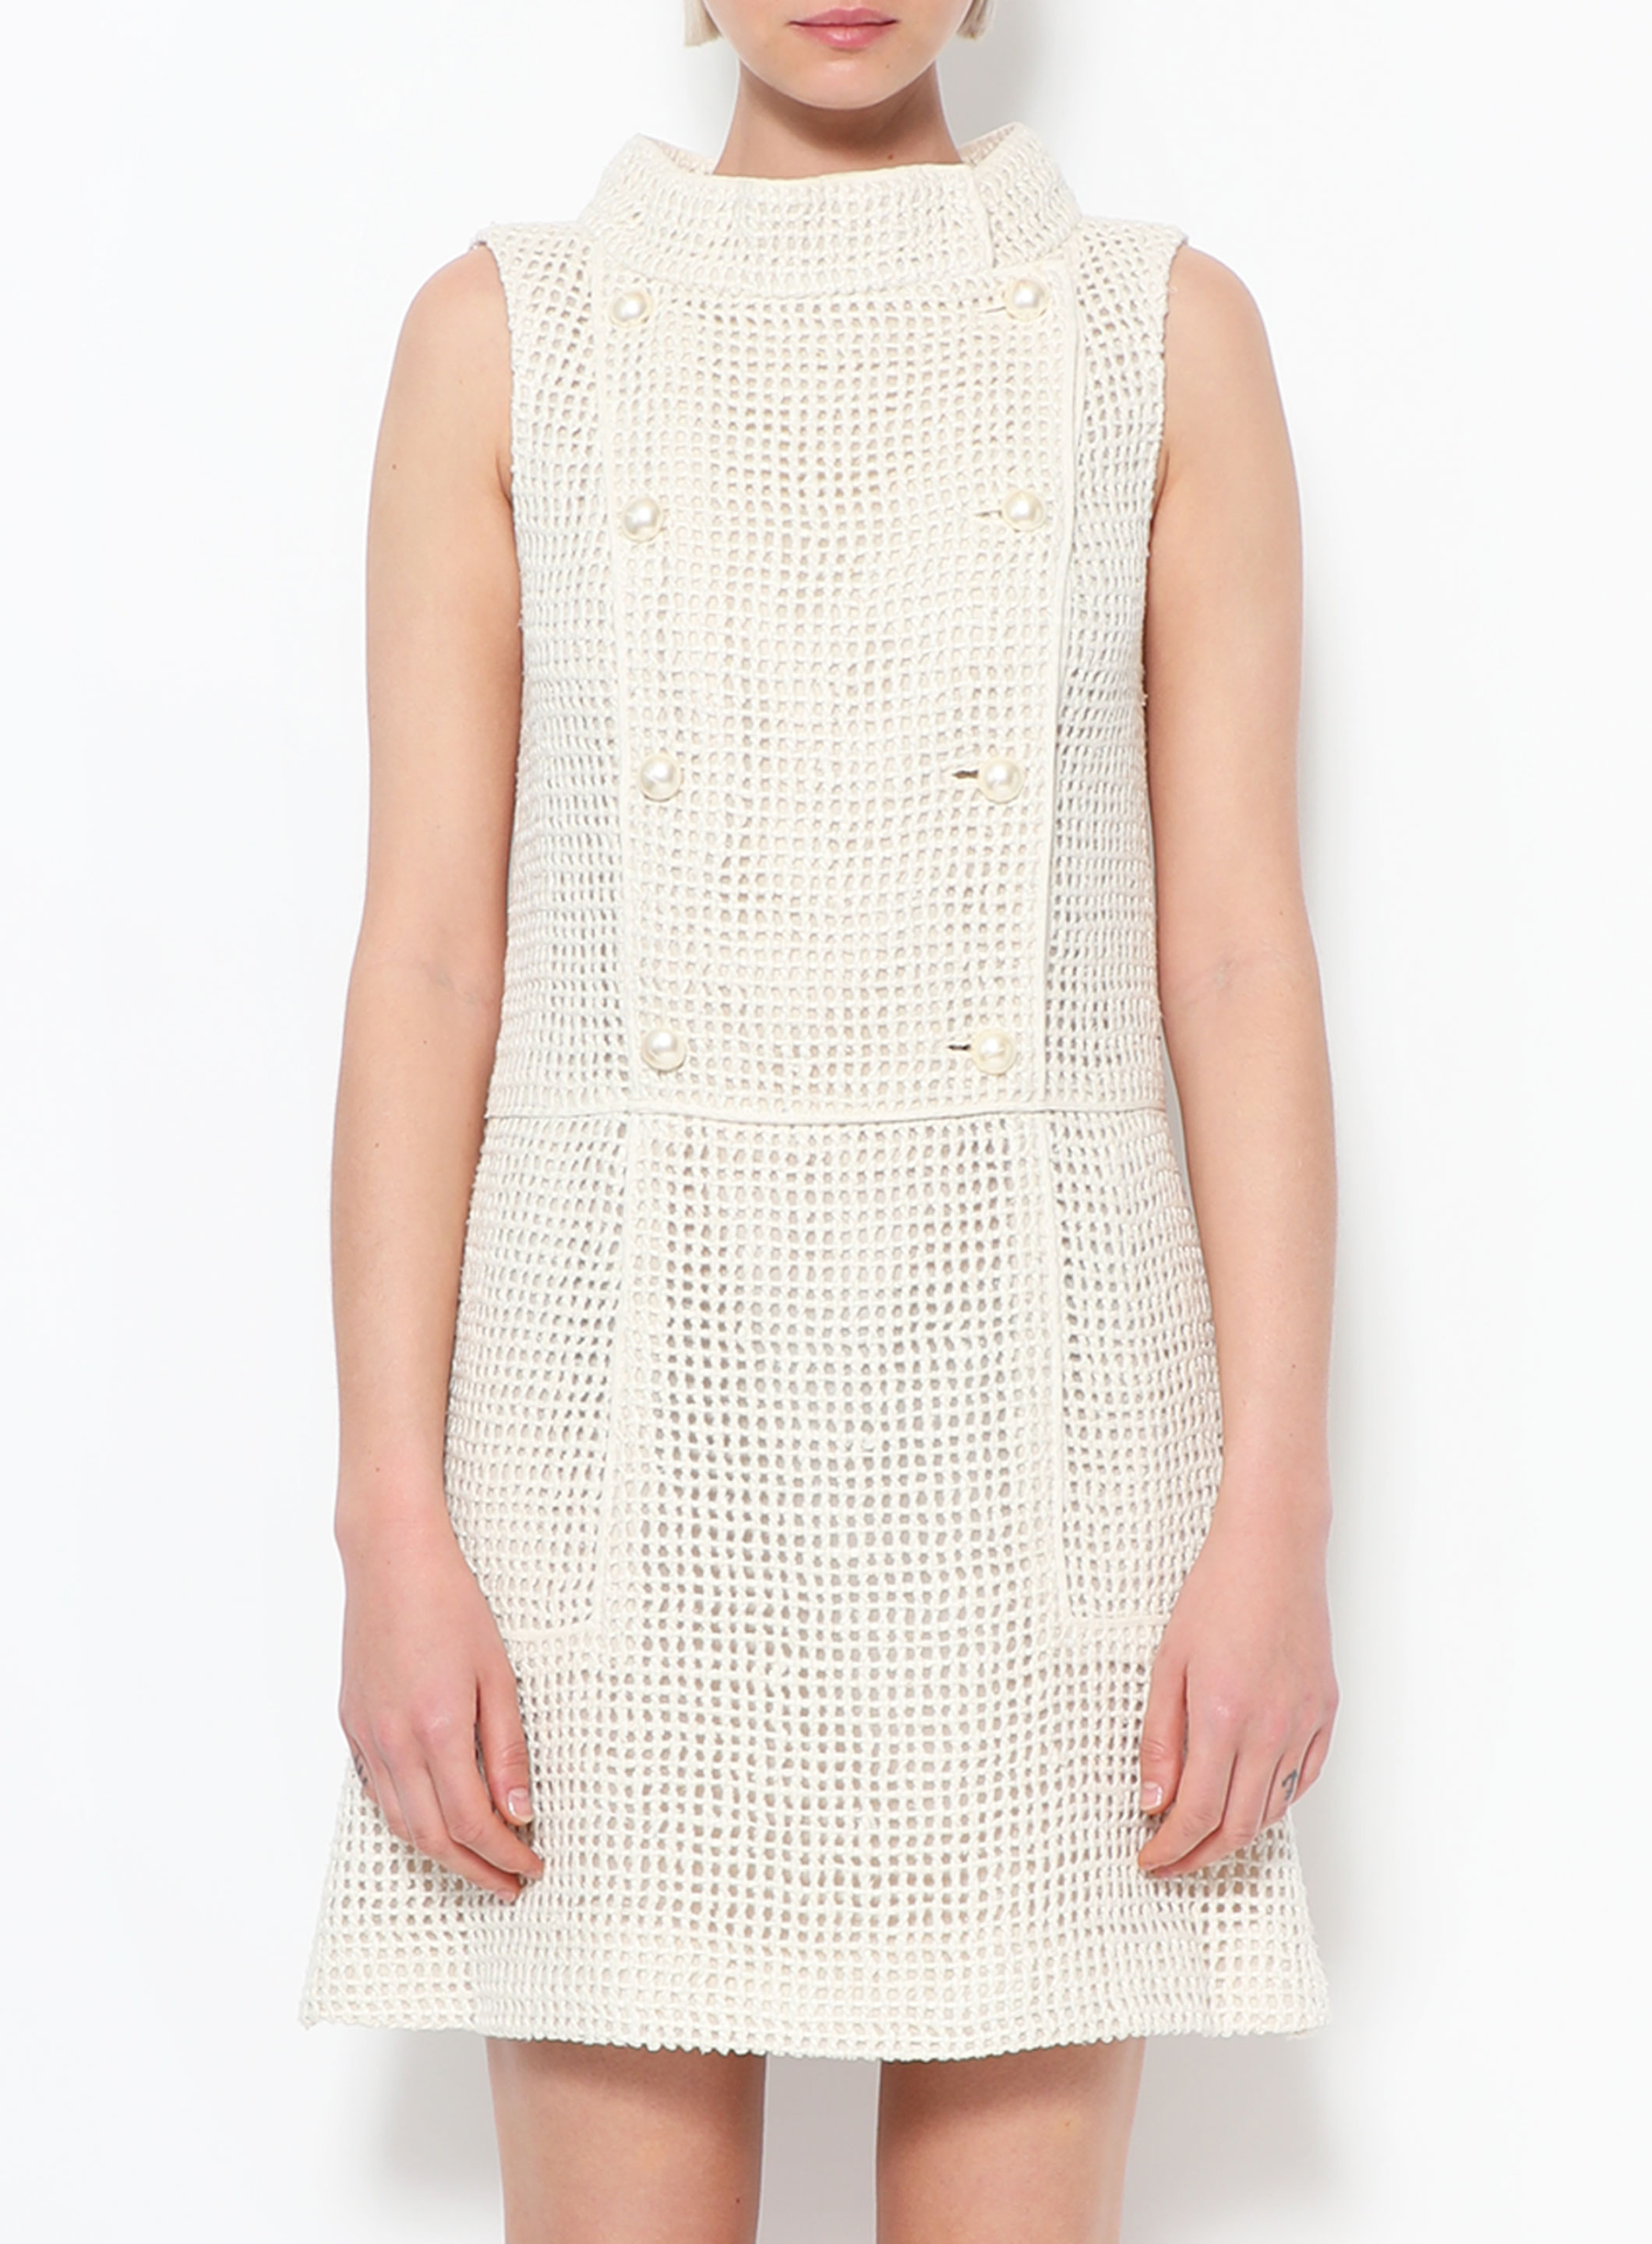 S/S 2013 Crochet Pearl Dress, Authentic & Vintage